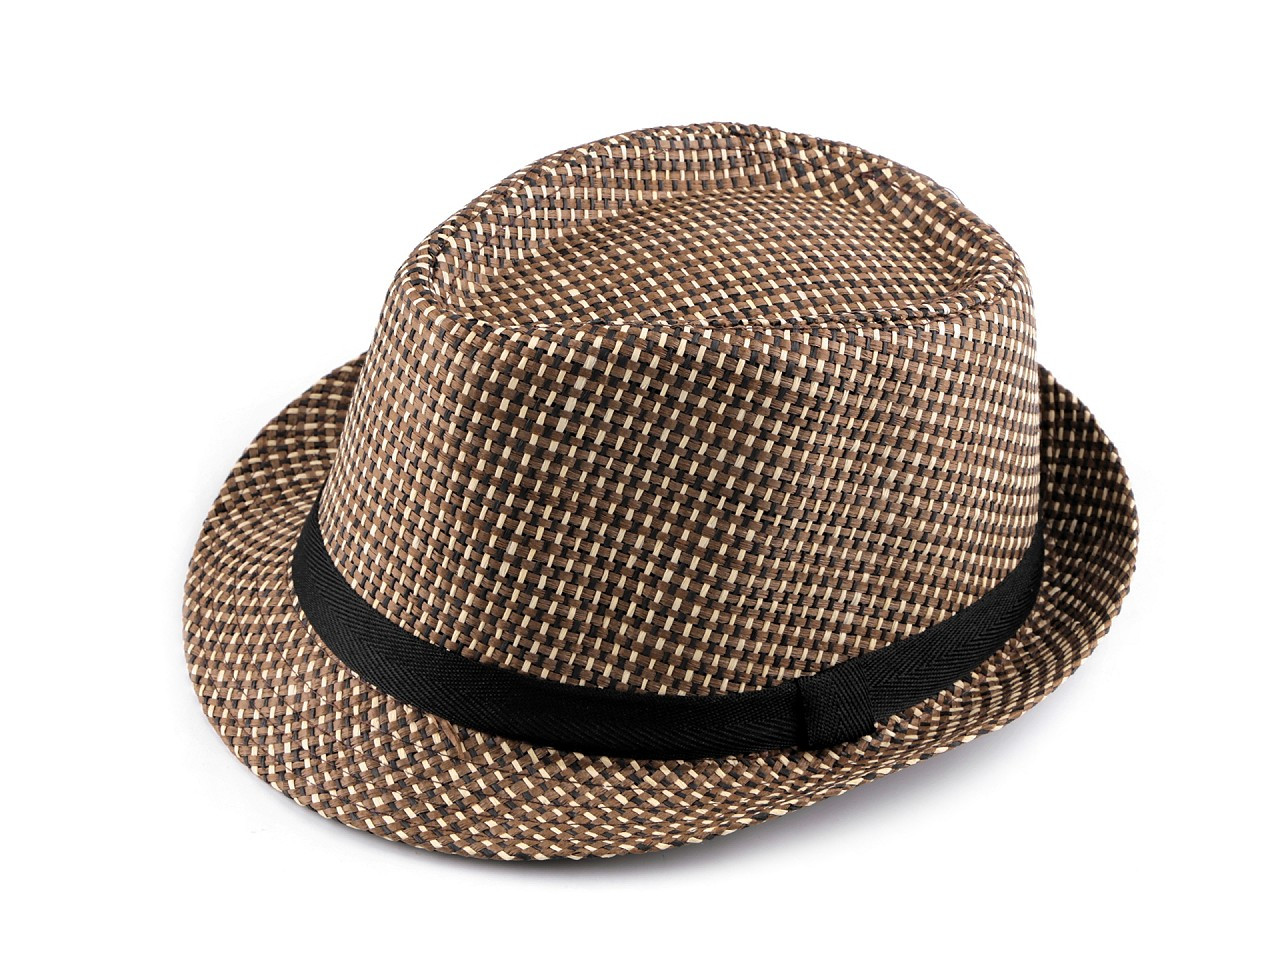 Letní klobouk / slamák unisex, barva 8 (vel. 59) hnědá přírodní